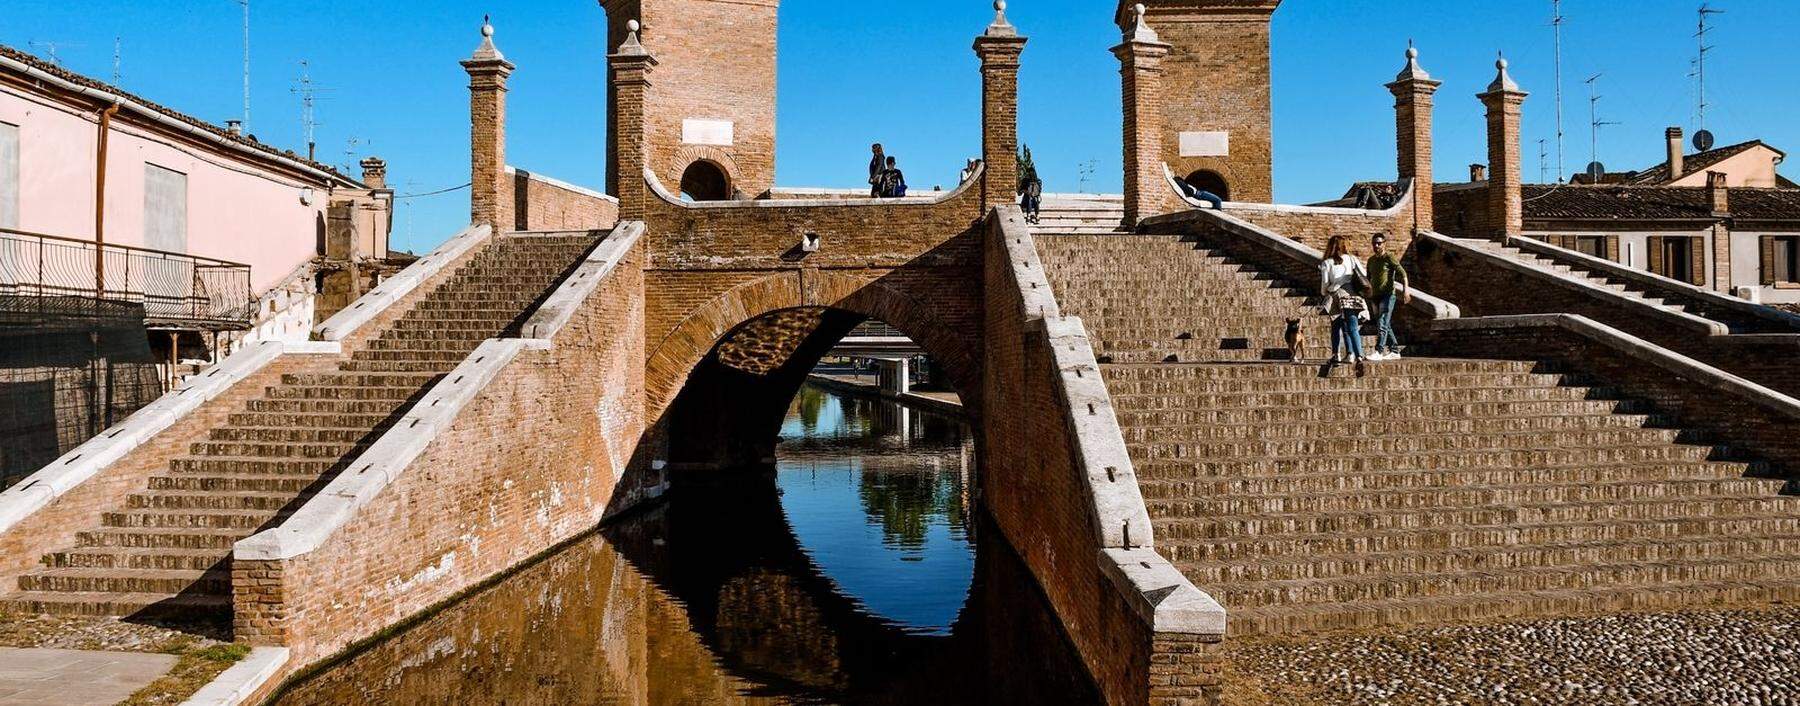 Trepponti: Brückenkunstwerk aus dem 17. Jahrhundert in Ravenna. 